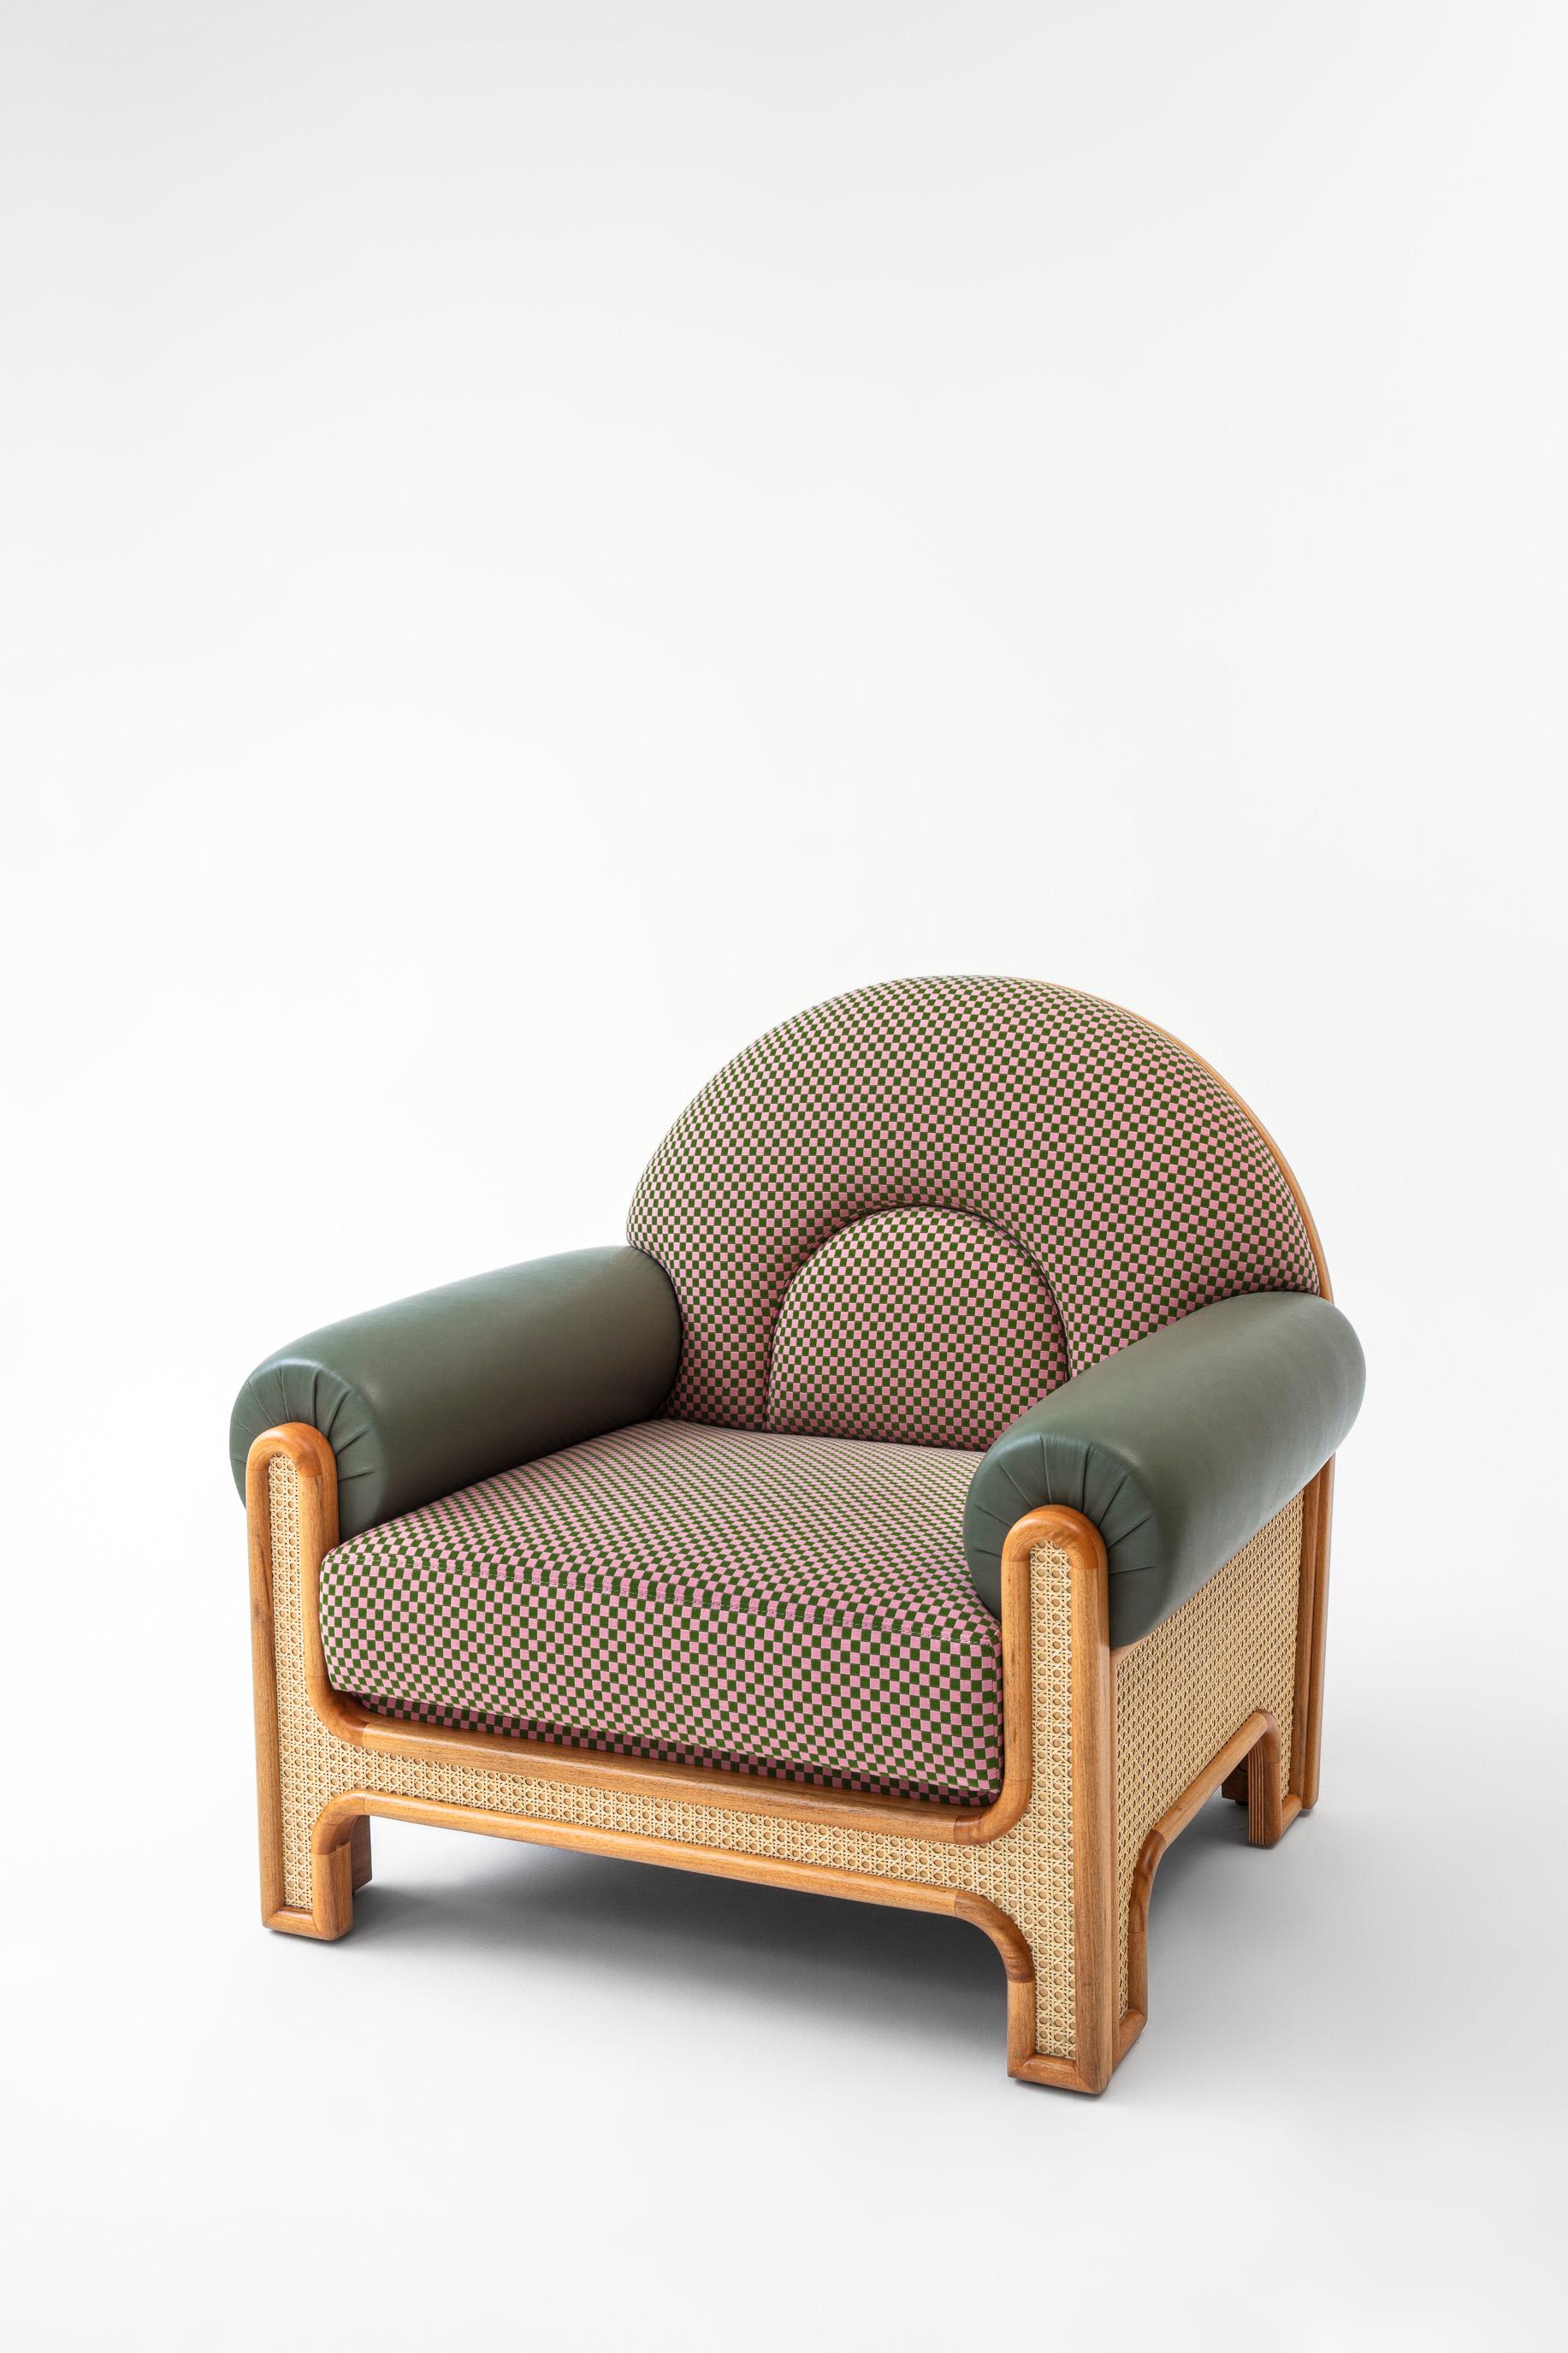 Le fauteuil N-gene est une réinterprétation d'un fauteuil conçu par l'oncle de Merve, l'architecte d'intérieur Engine, dans les années 1970. Le N-Gene est revisité avec des cannages, et est tapissé d'un textile à carreaux avec des accoudoirs en cuir